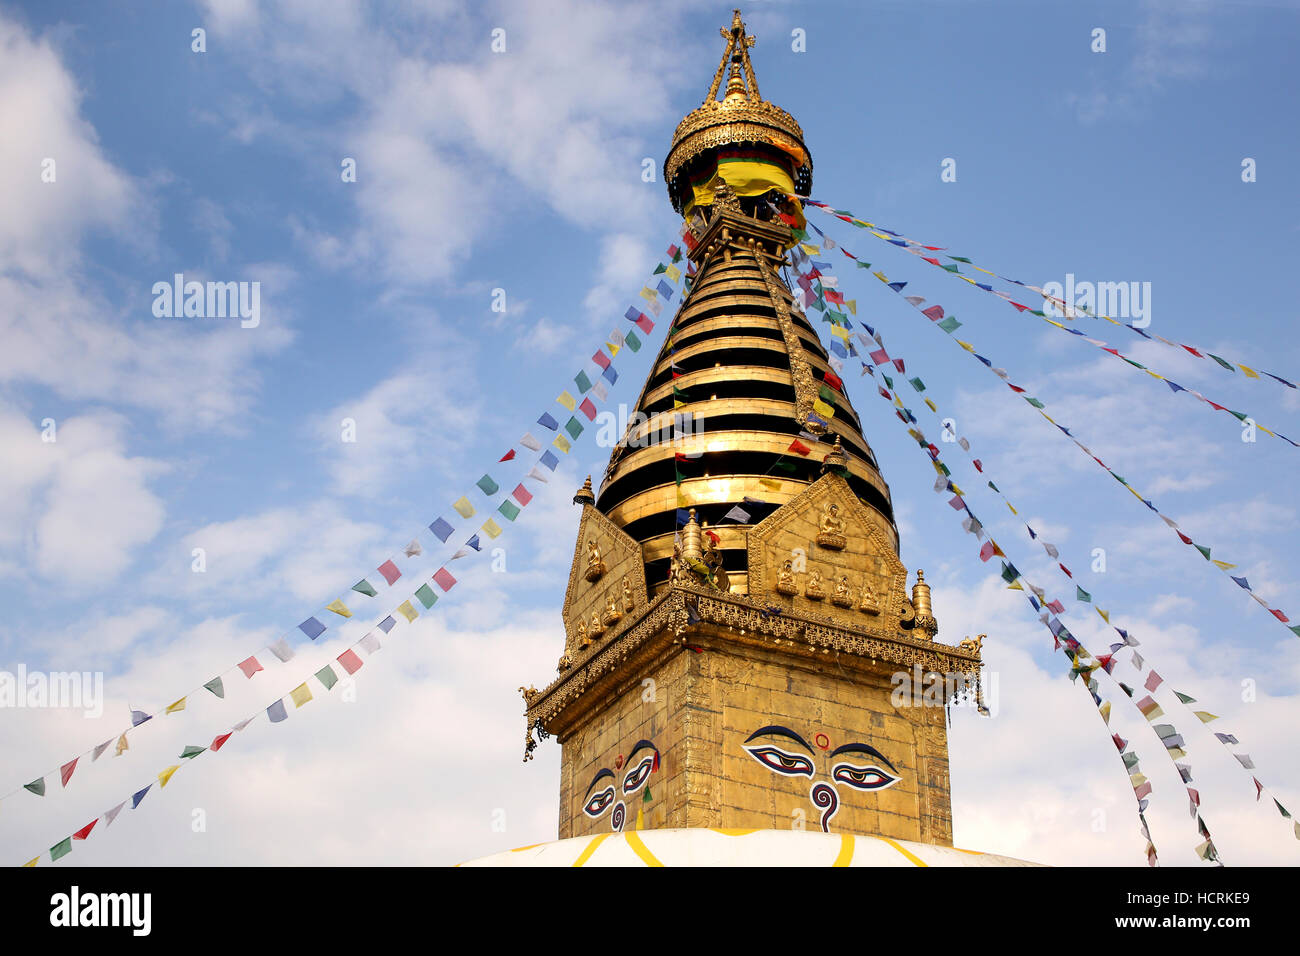 Stupa doré de la Buddhist Monkey temple avec des drapeaux de prière, Temple de Swayambhu Nath, Katmandou, Népal. Banque D'Images